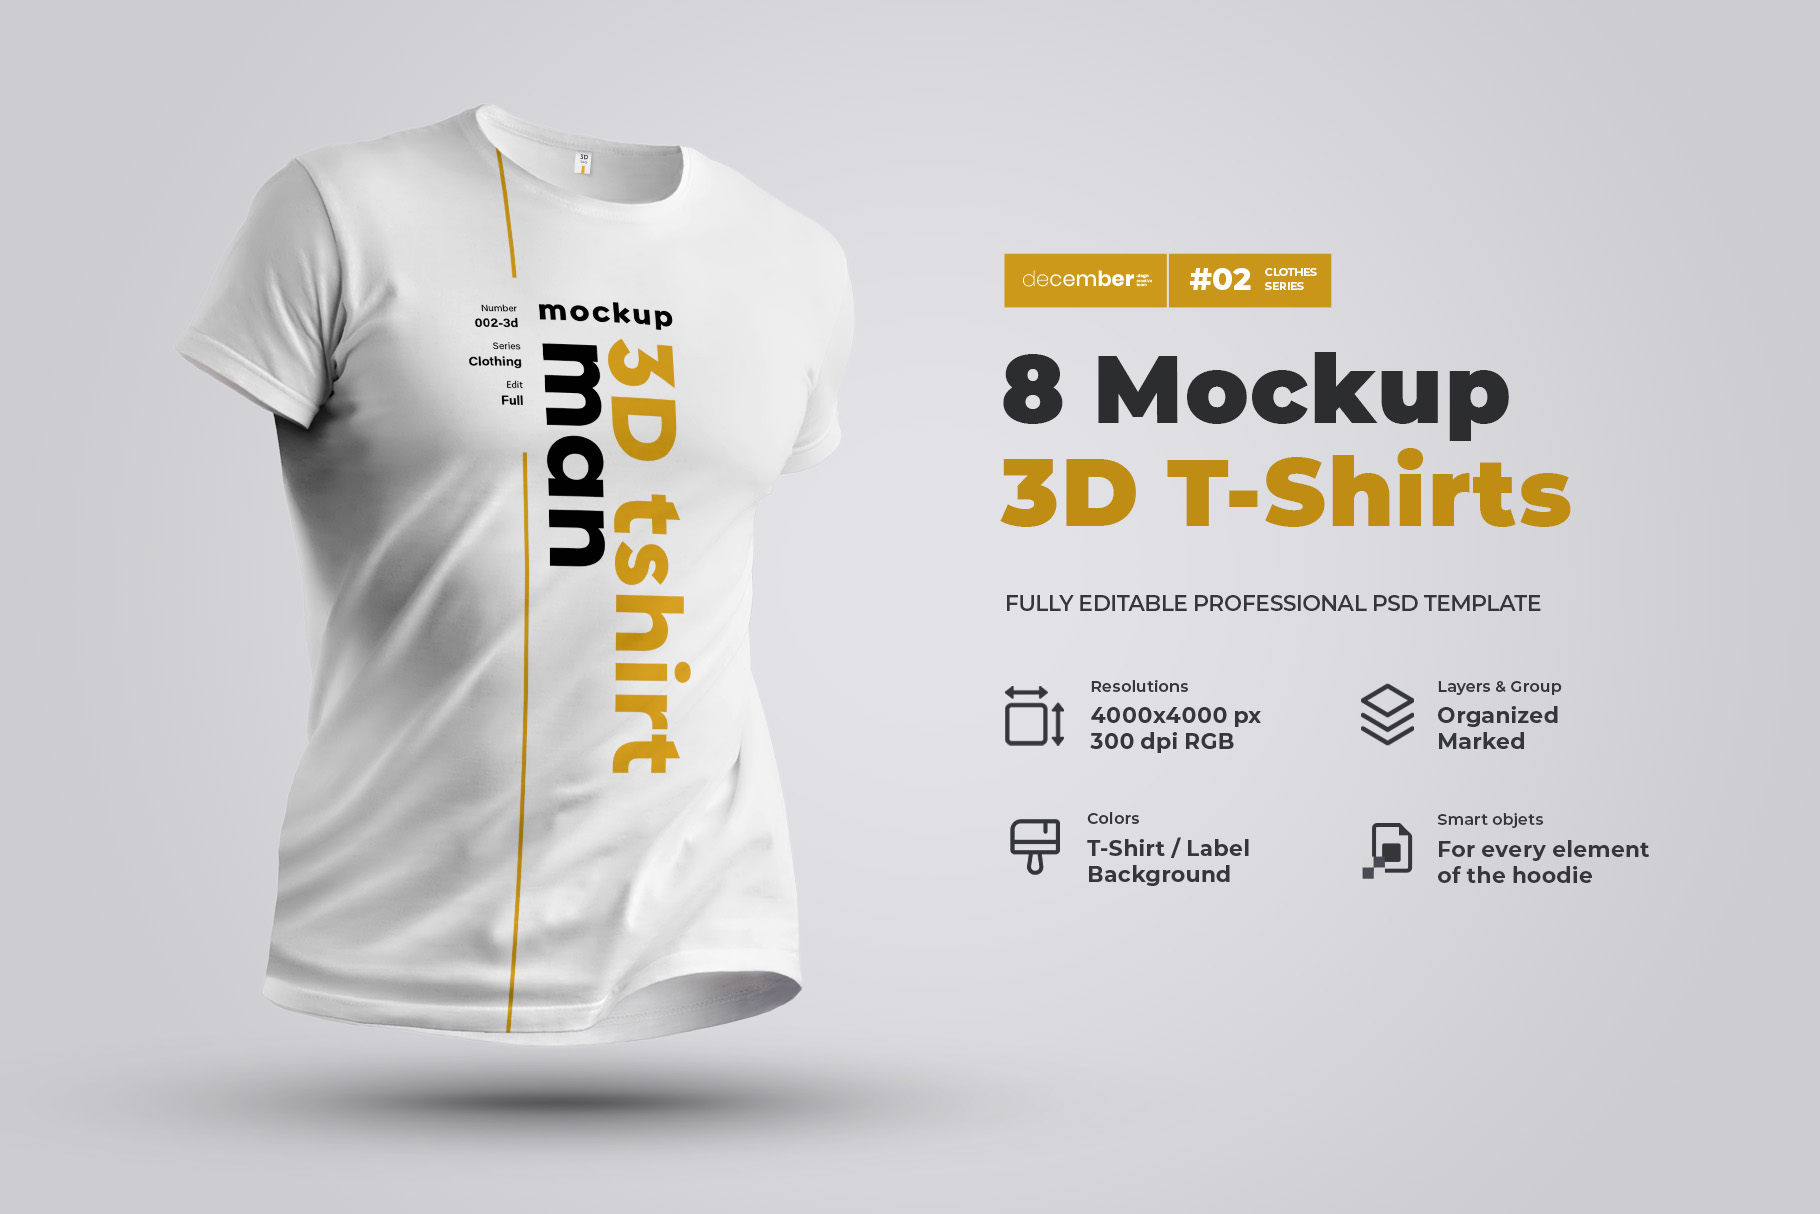 8 Mockups 3D T-Shirts facebook image.